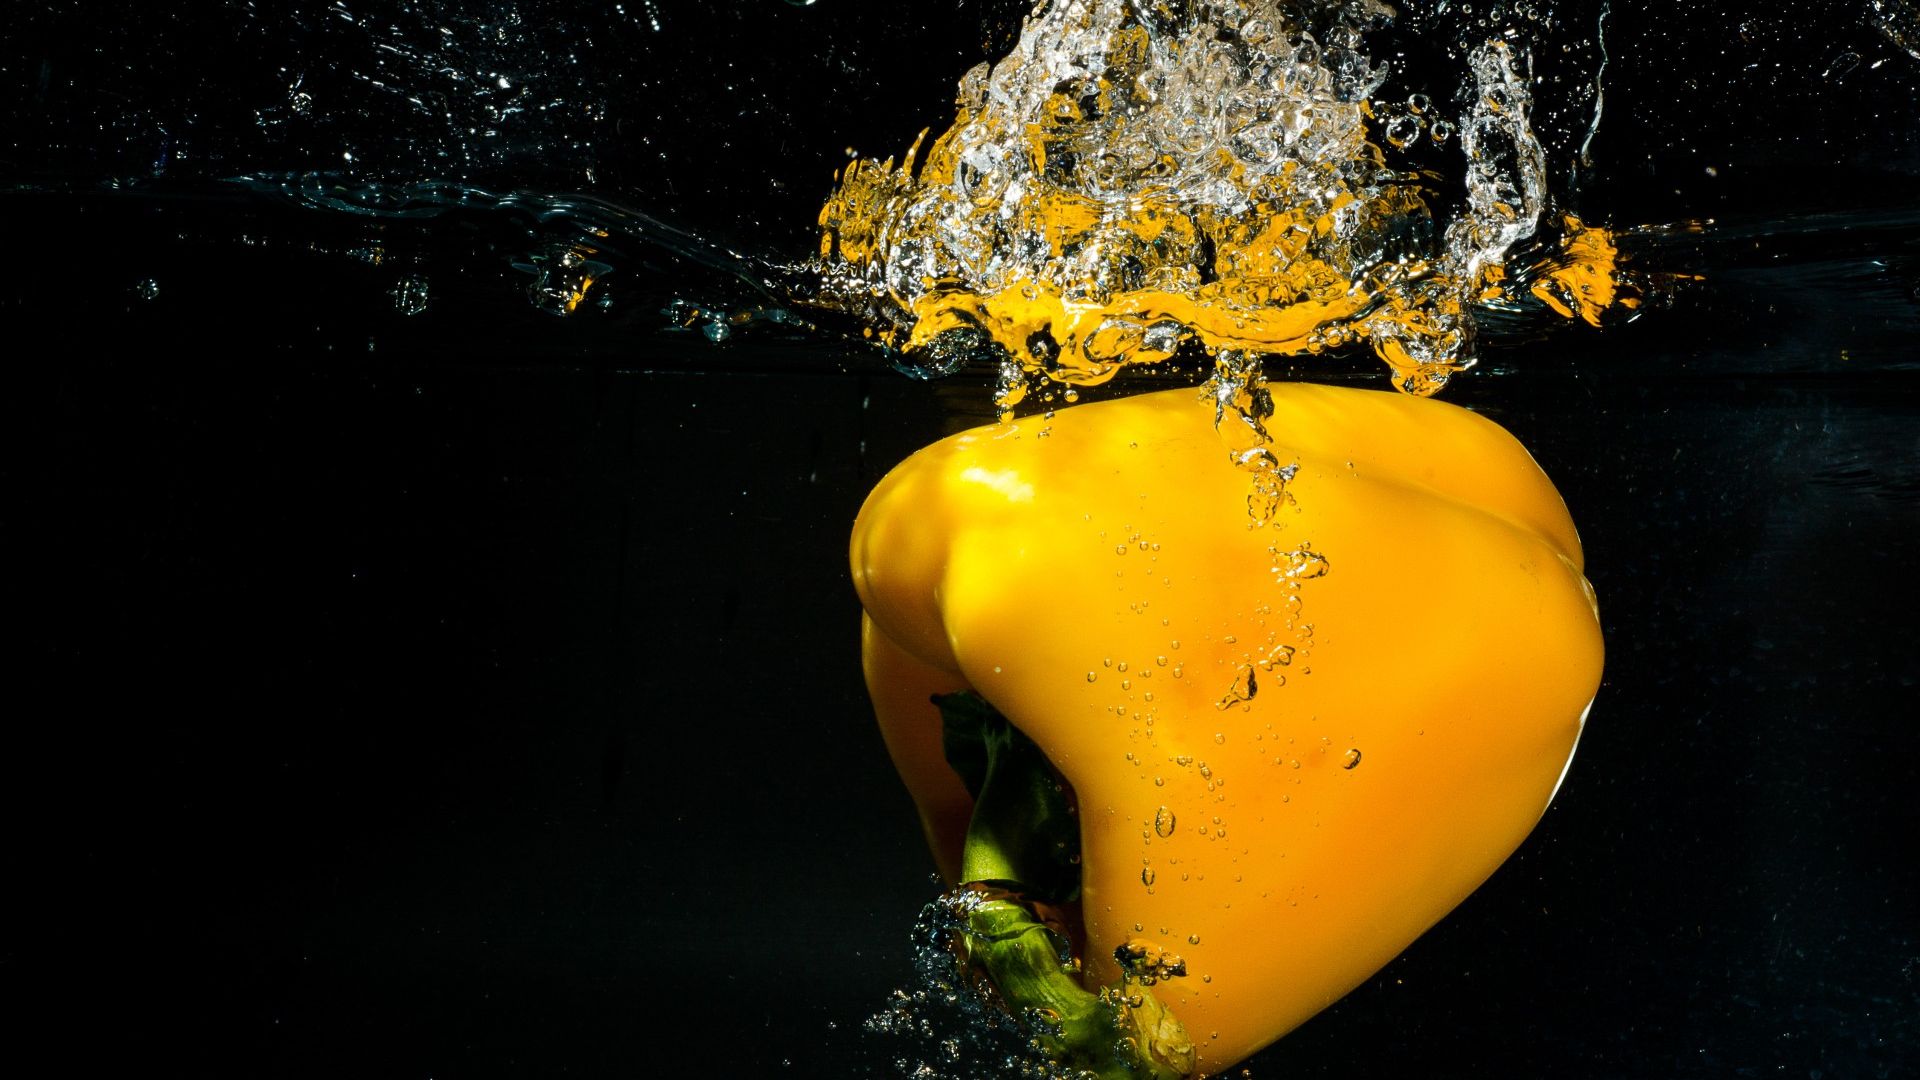 Wallpaper Bell pepper, Yellow Capsicum in water